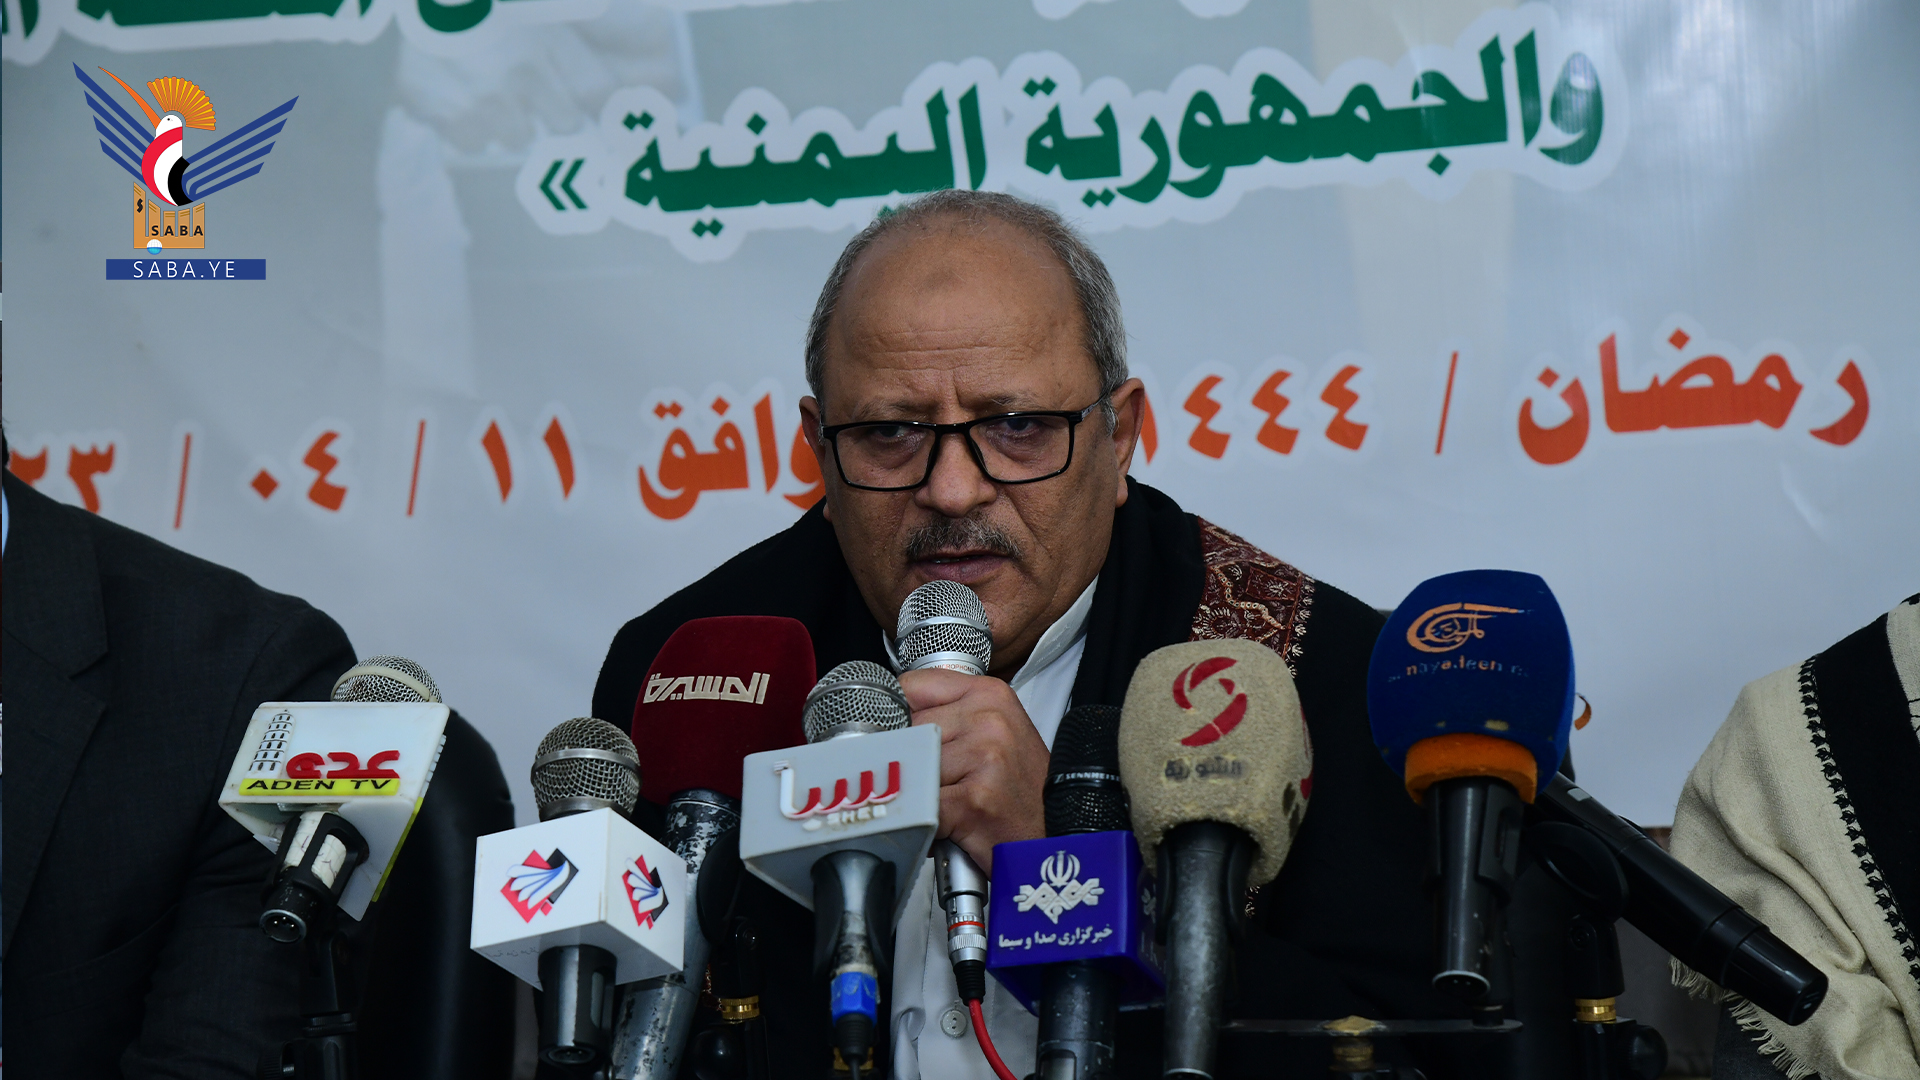 النعيمي يؤكد تمسك القيادة الثورية بمطالب وحقوق الشعب اليمني في إنهاء العدوان ورفع الحصار